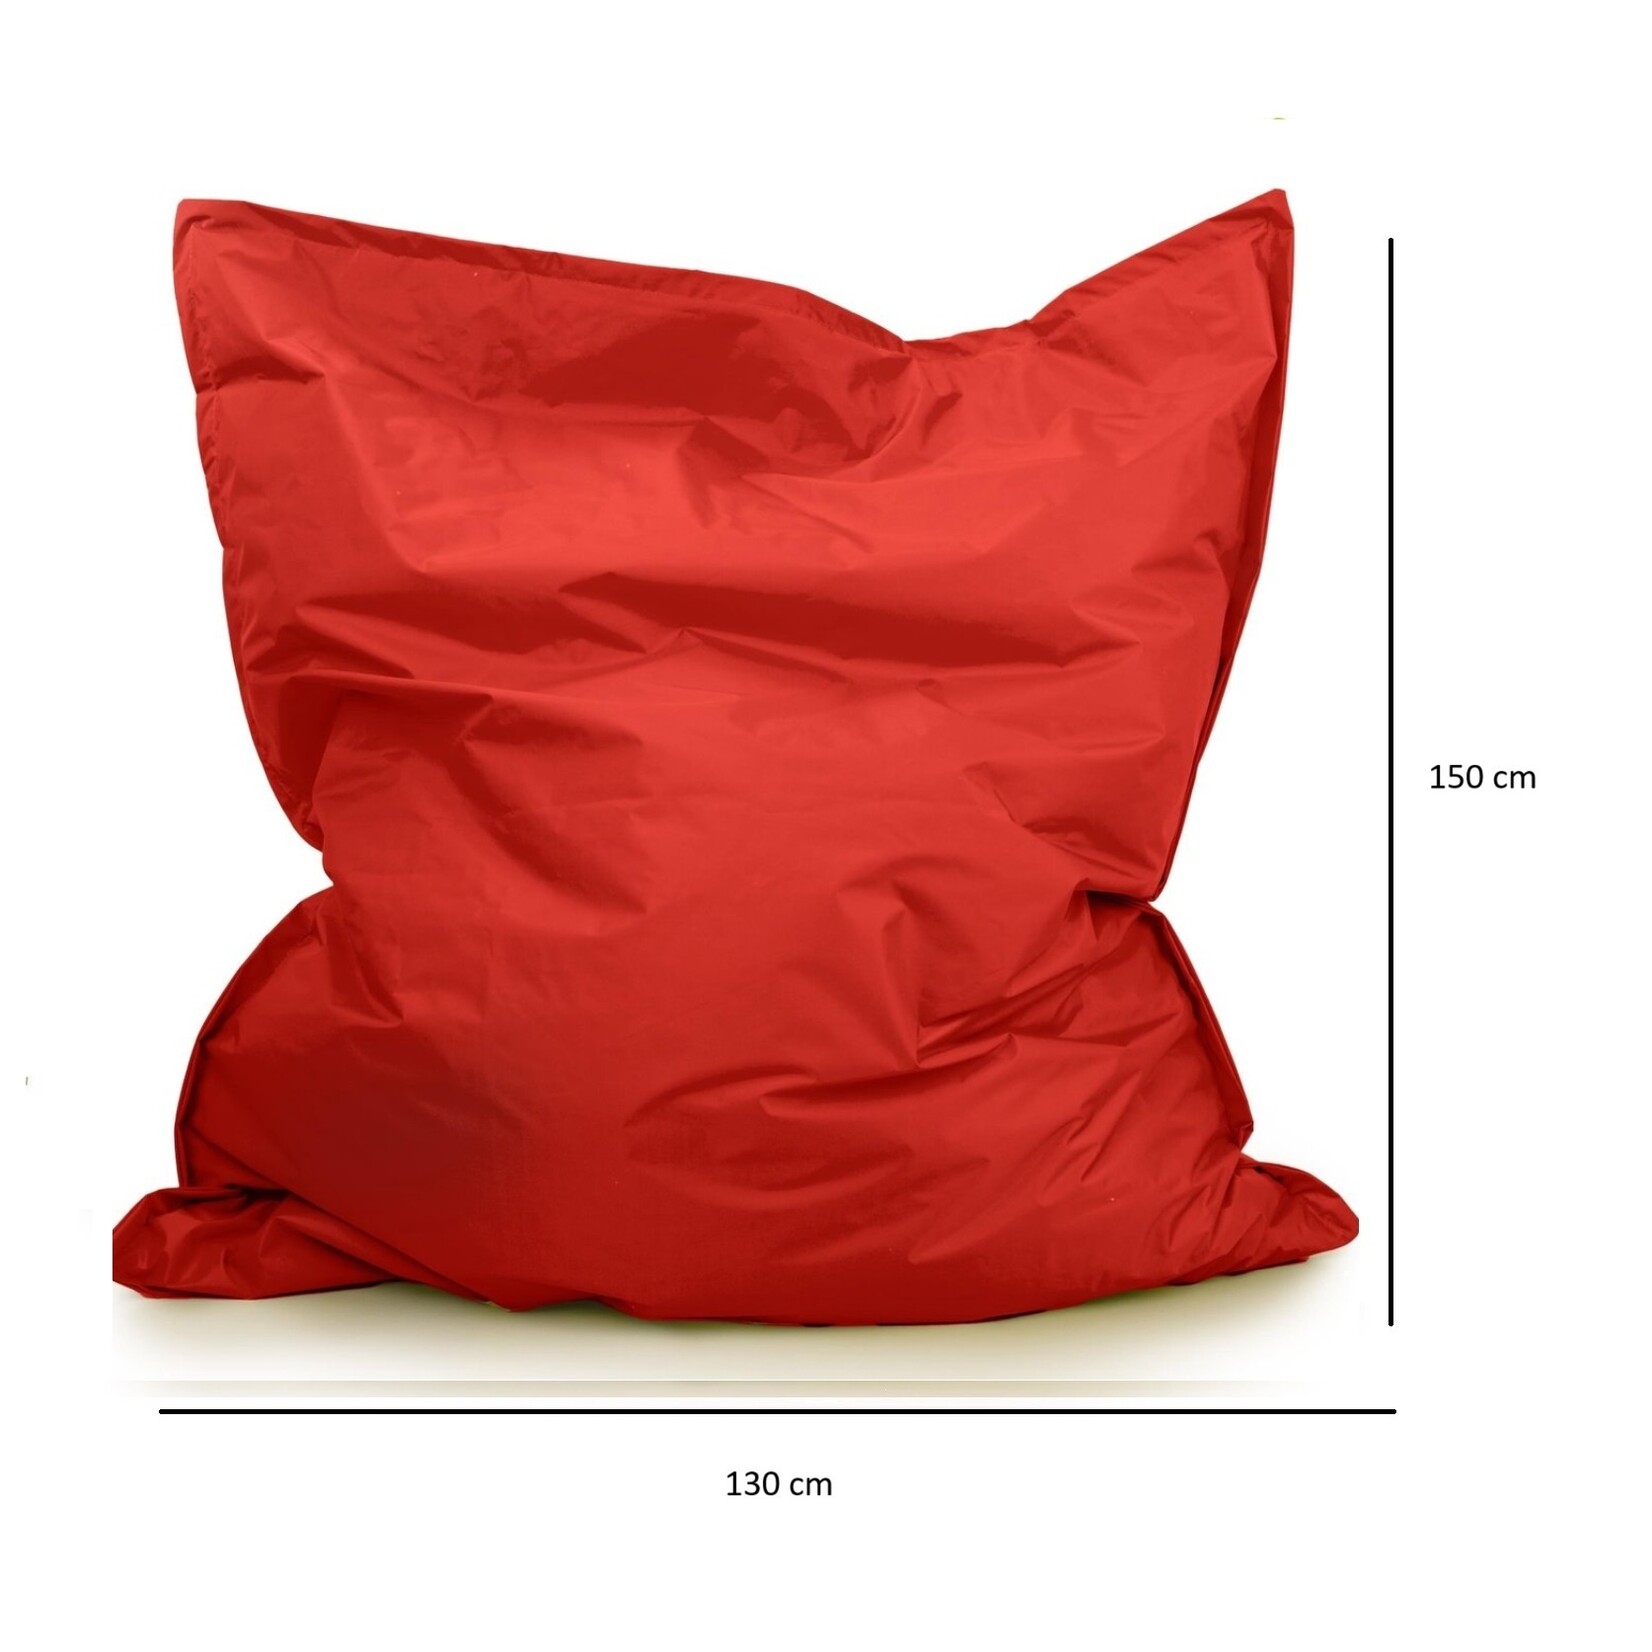 Drop & sit zitzak -Nylon - Zitzakfauteuil - Woonkamerzitzak - Rood - 130 x 150 cm - binnen en buiten